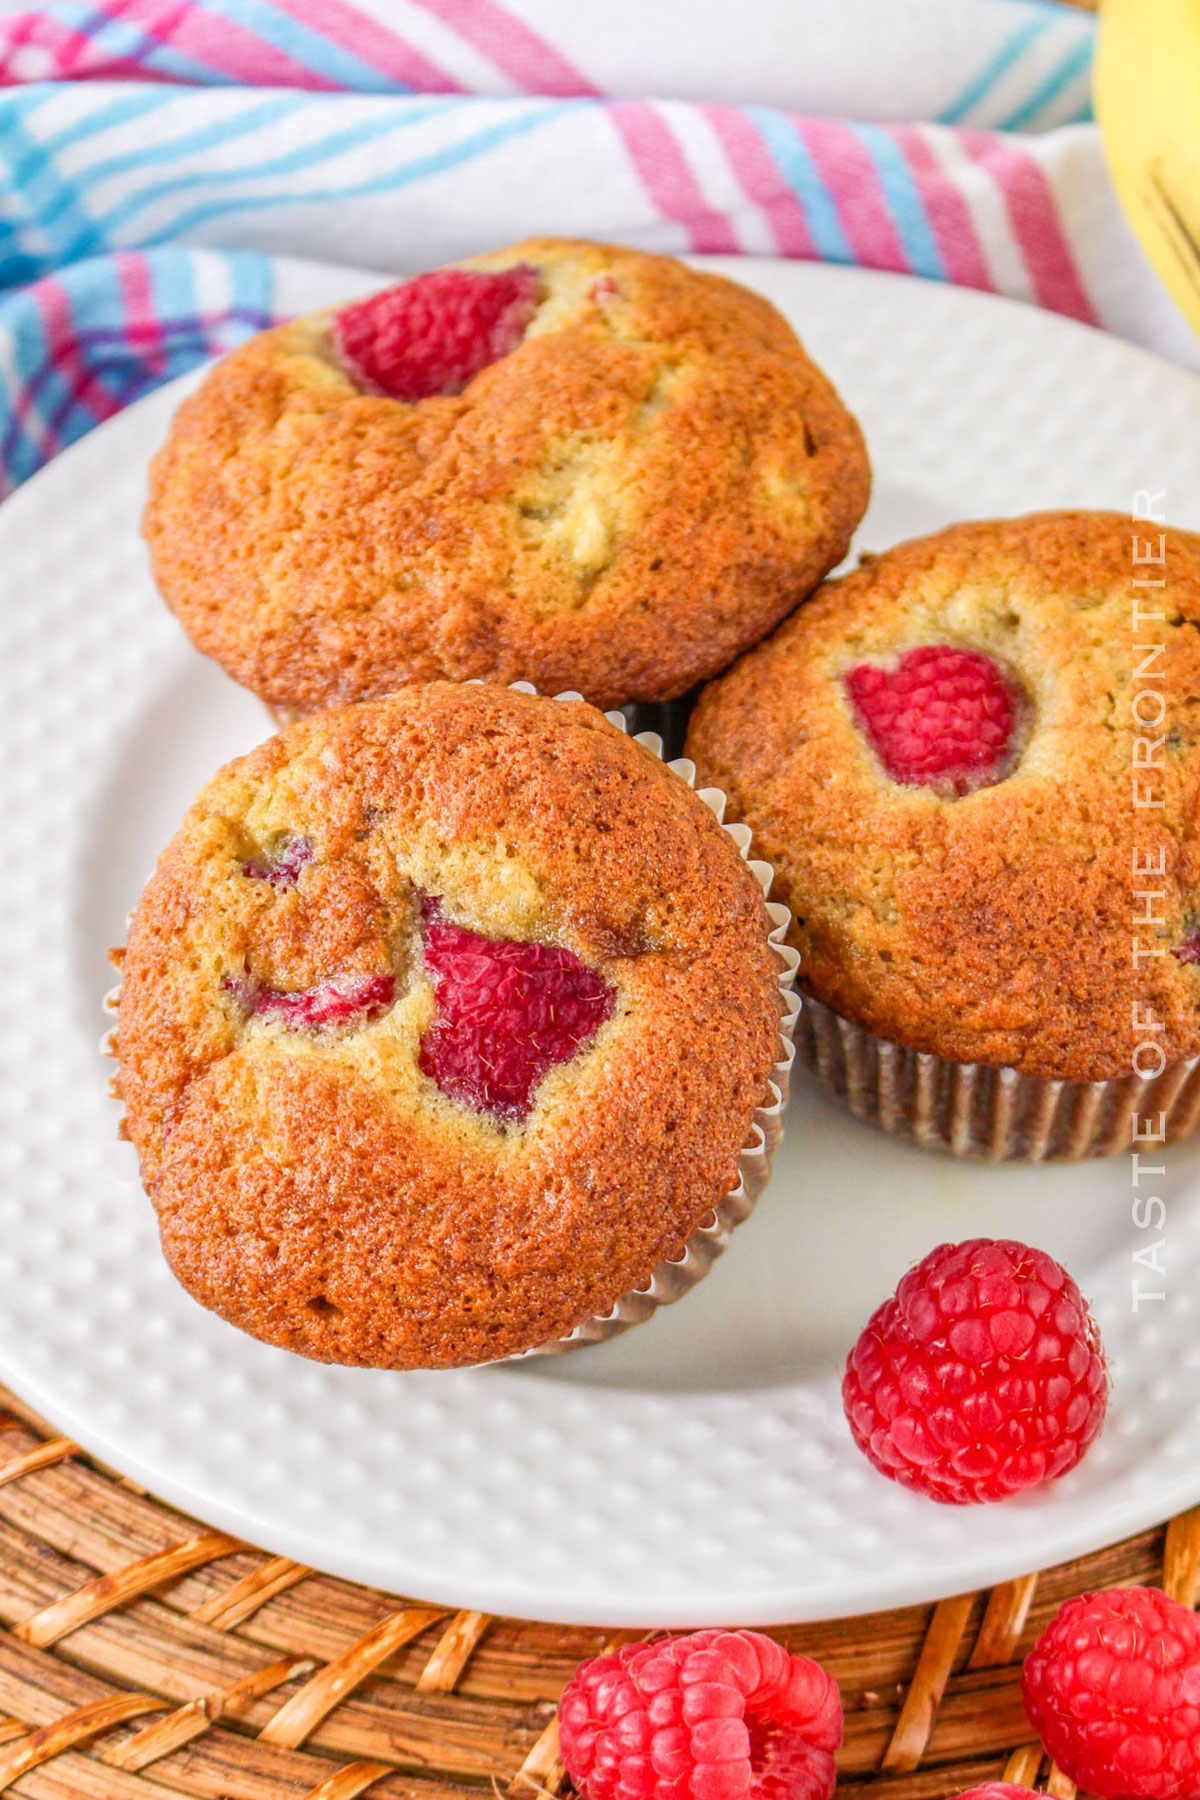 Banana Raspberry Muffin recipe